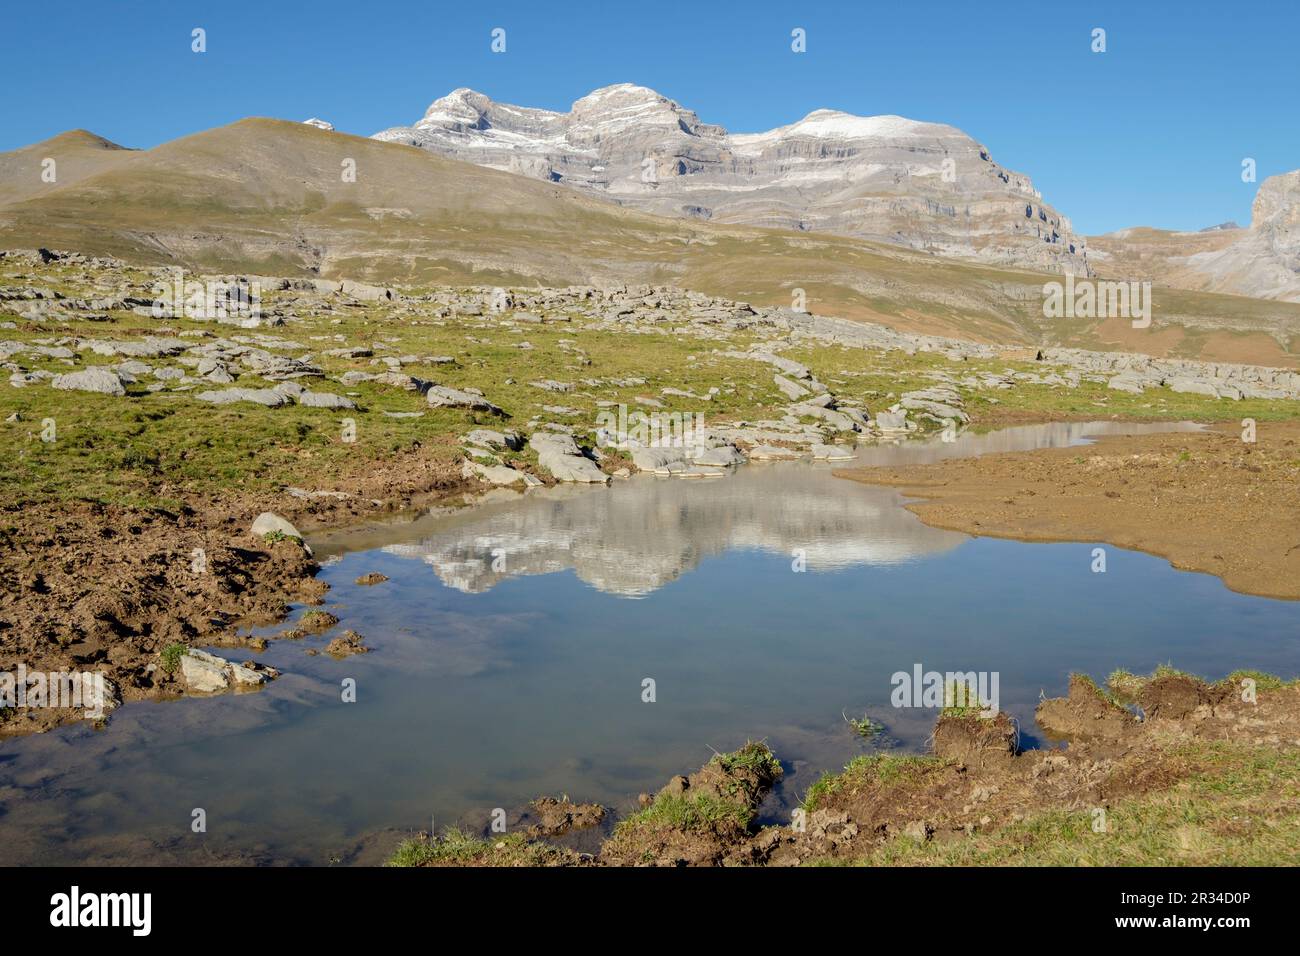 Parque Nacional de Ordesa y Monte Perdido, comarca del Sobrarbe, Huesca, Aragón, cordillera de los Pirineos, Espagne. Banque D'Images